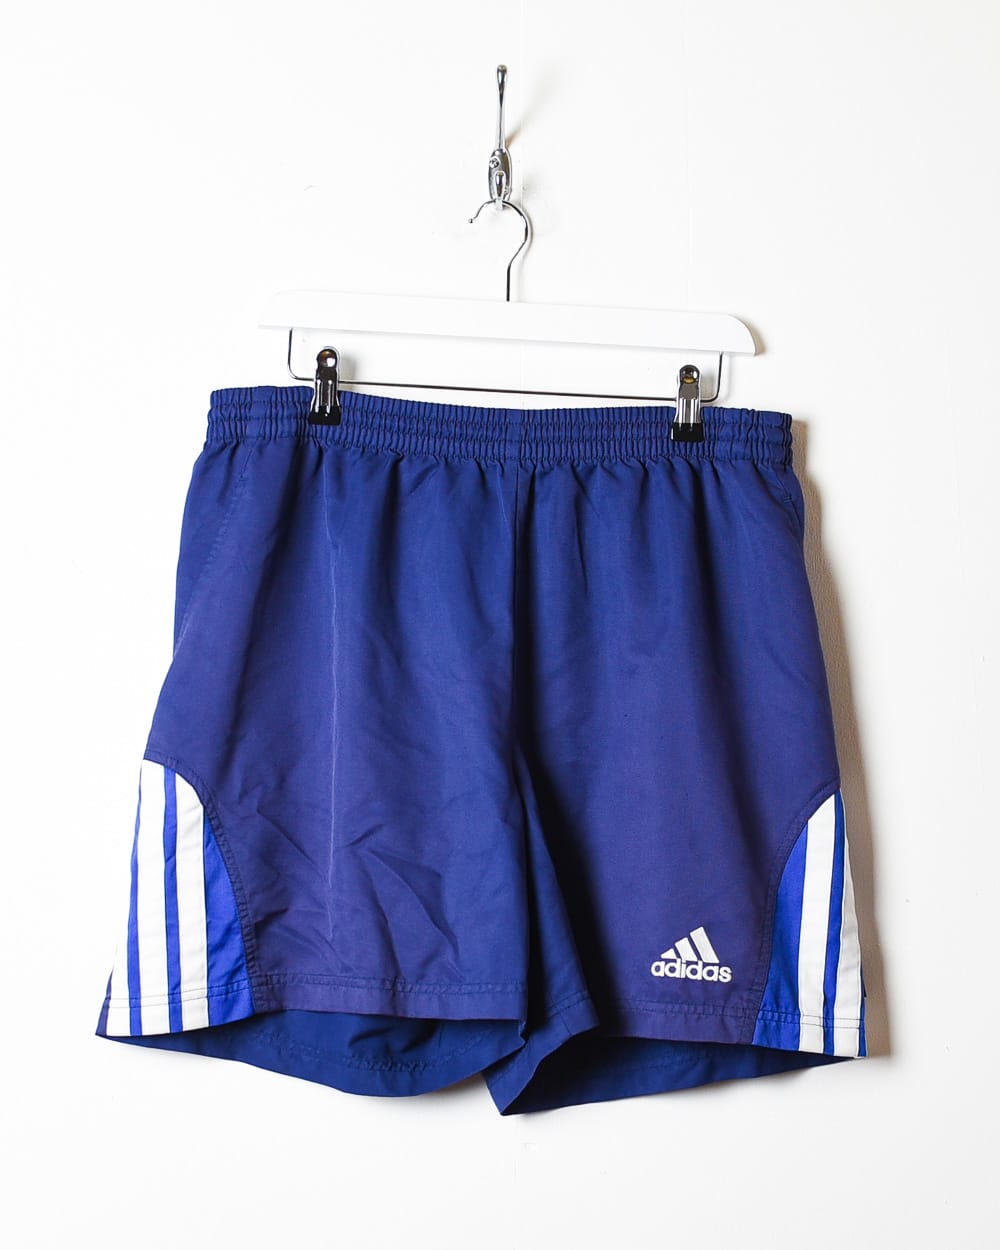 Navy Adidas Shorts - Large